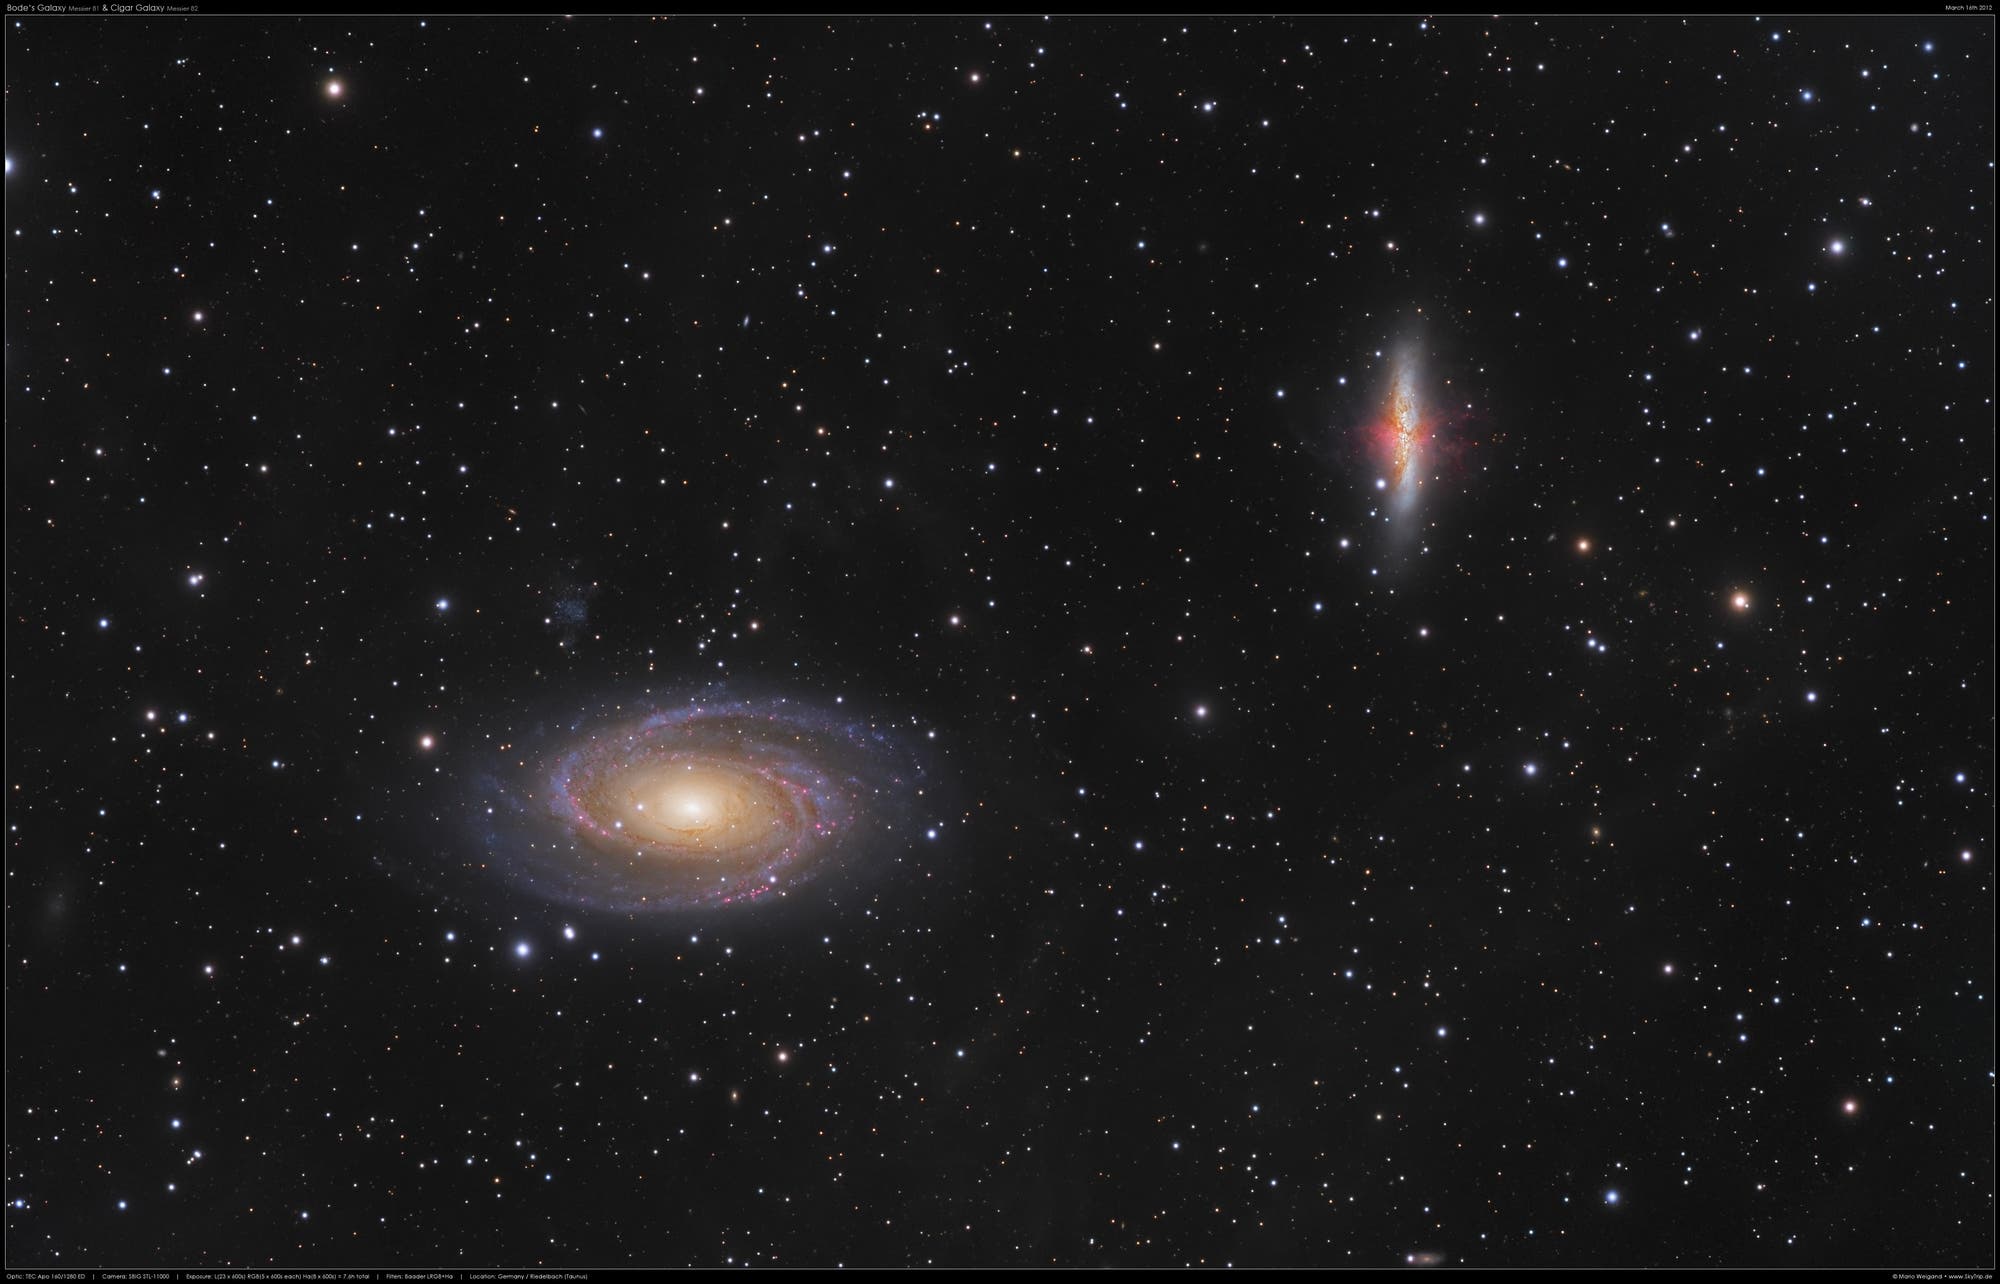 Bodes Galaxie M 81 und M 82